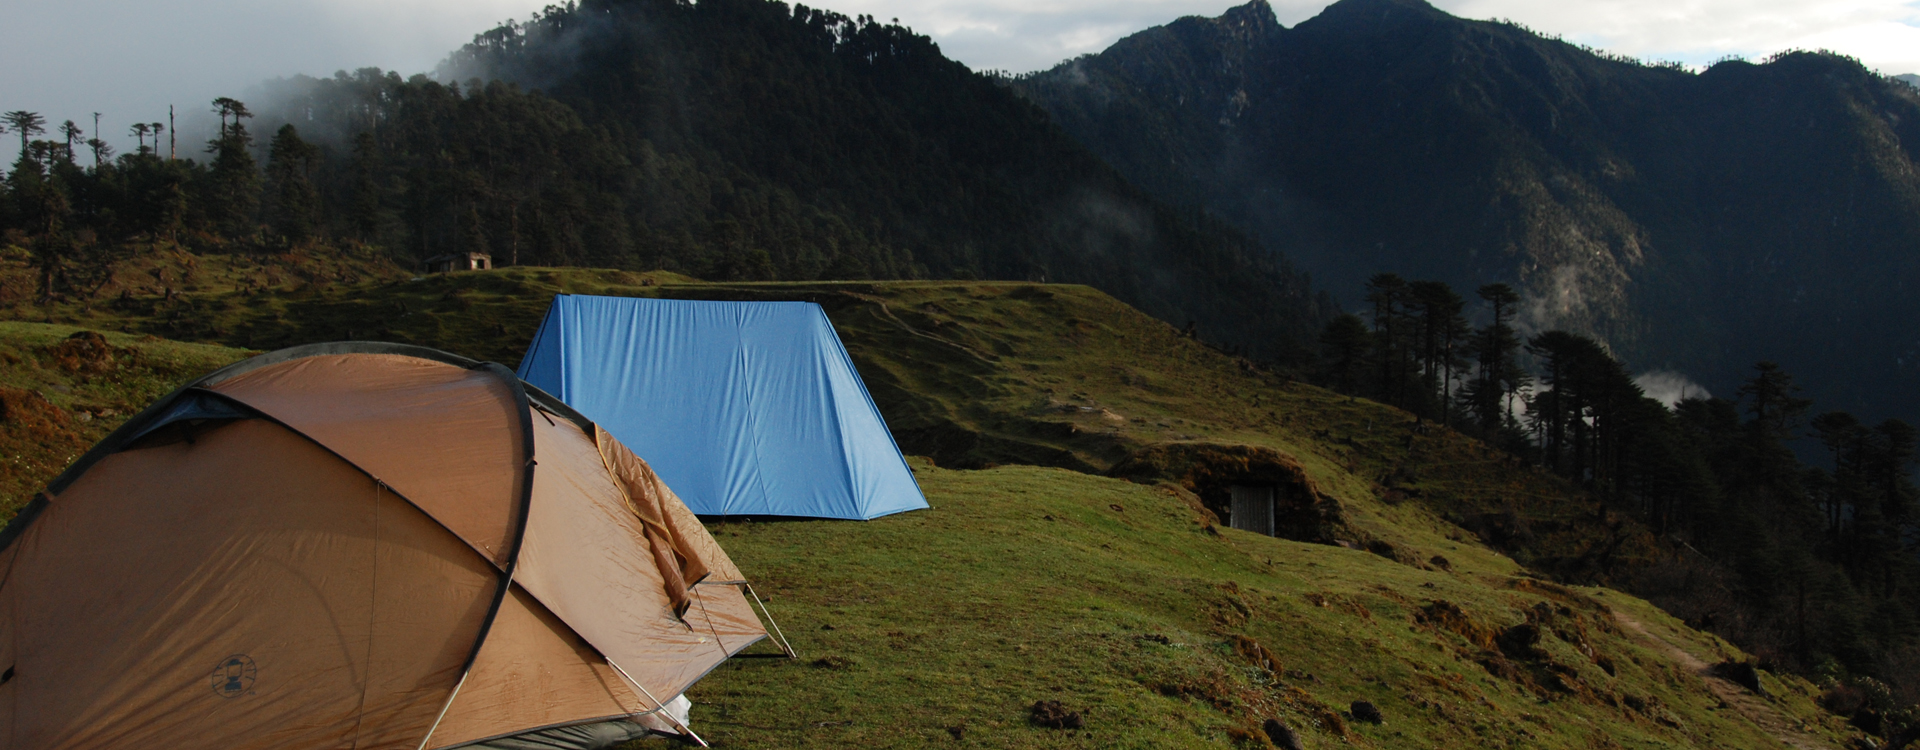 Pursingla Trek to Gorichen Base Camp, Arunachal Pradesh